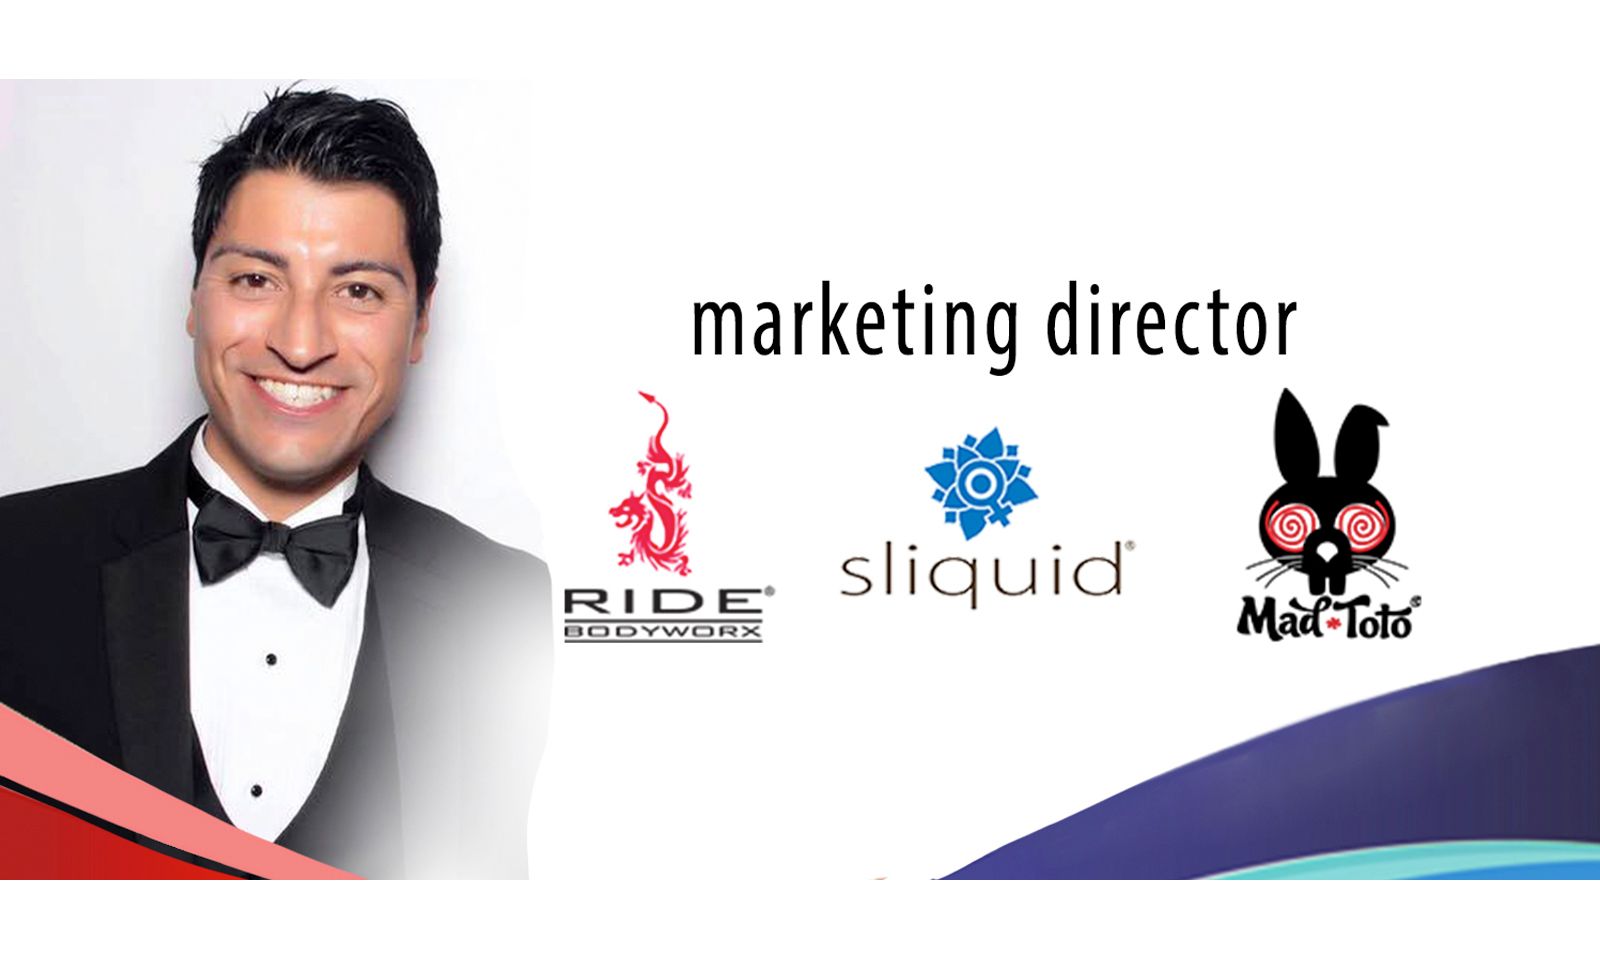 Erik Vasquez Promoted to Marketing Director For Sliquid